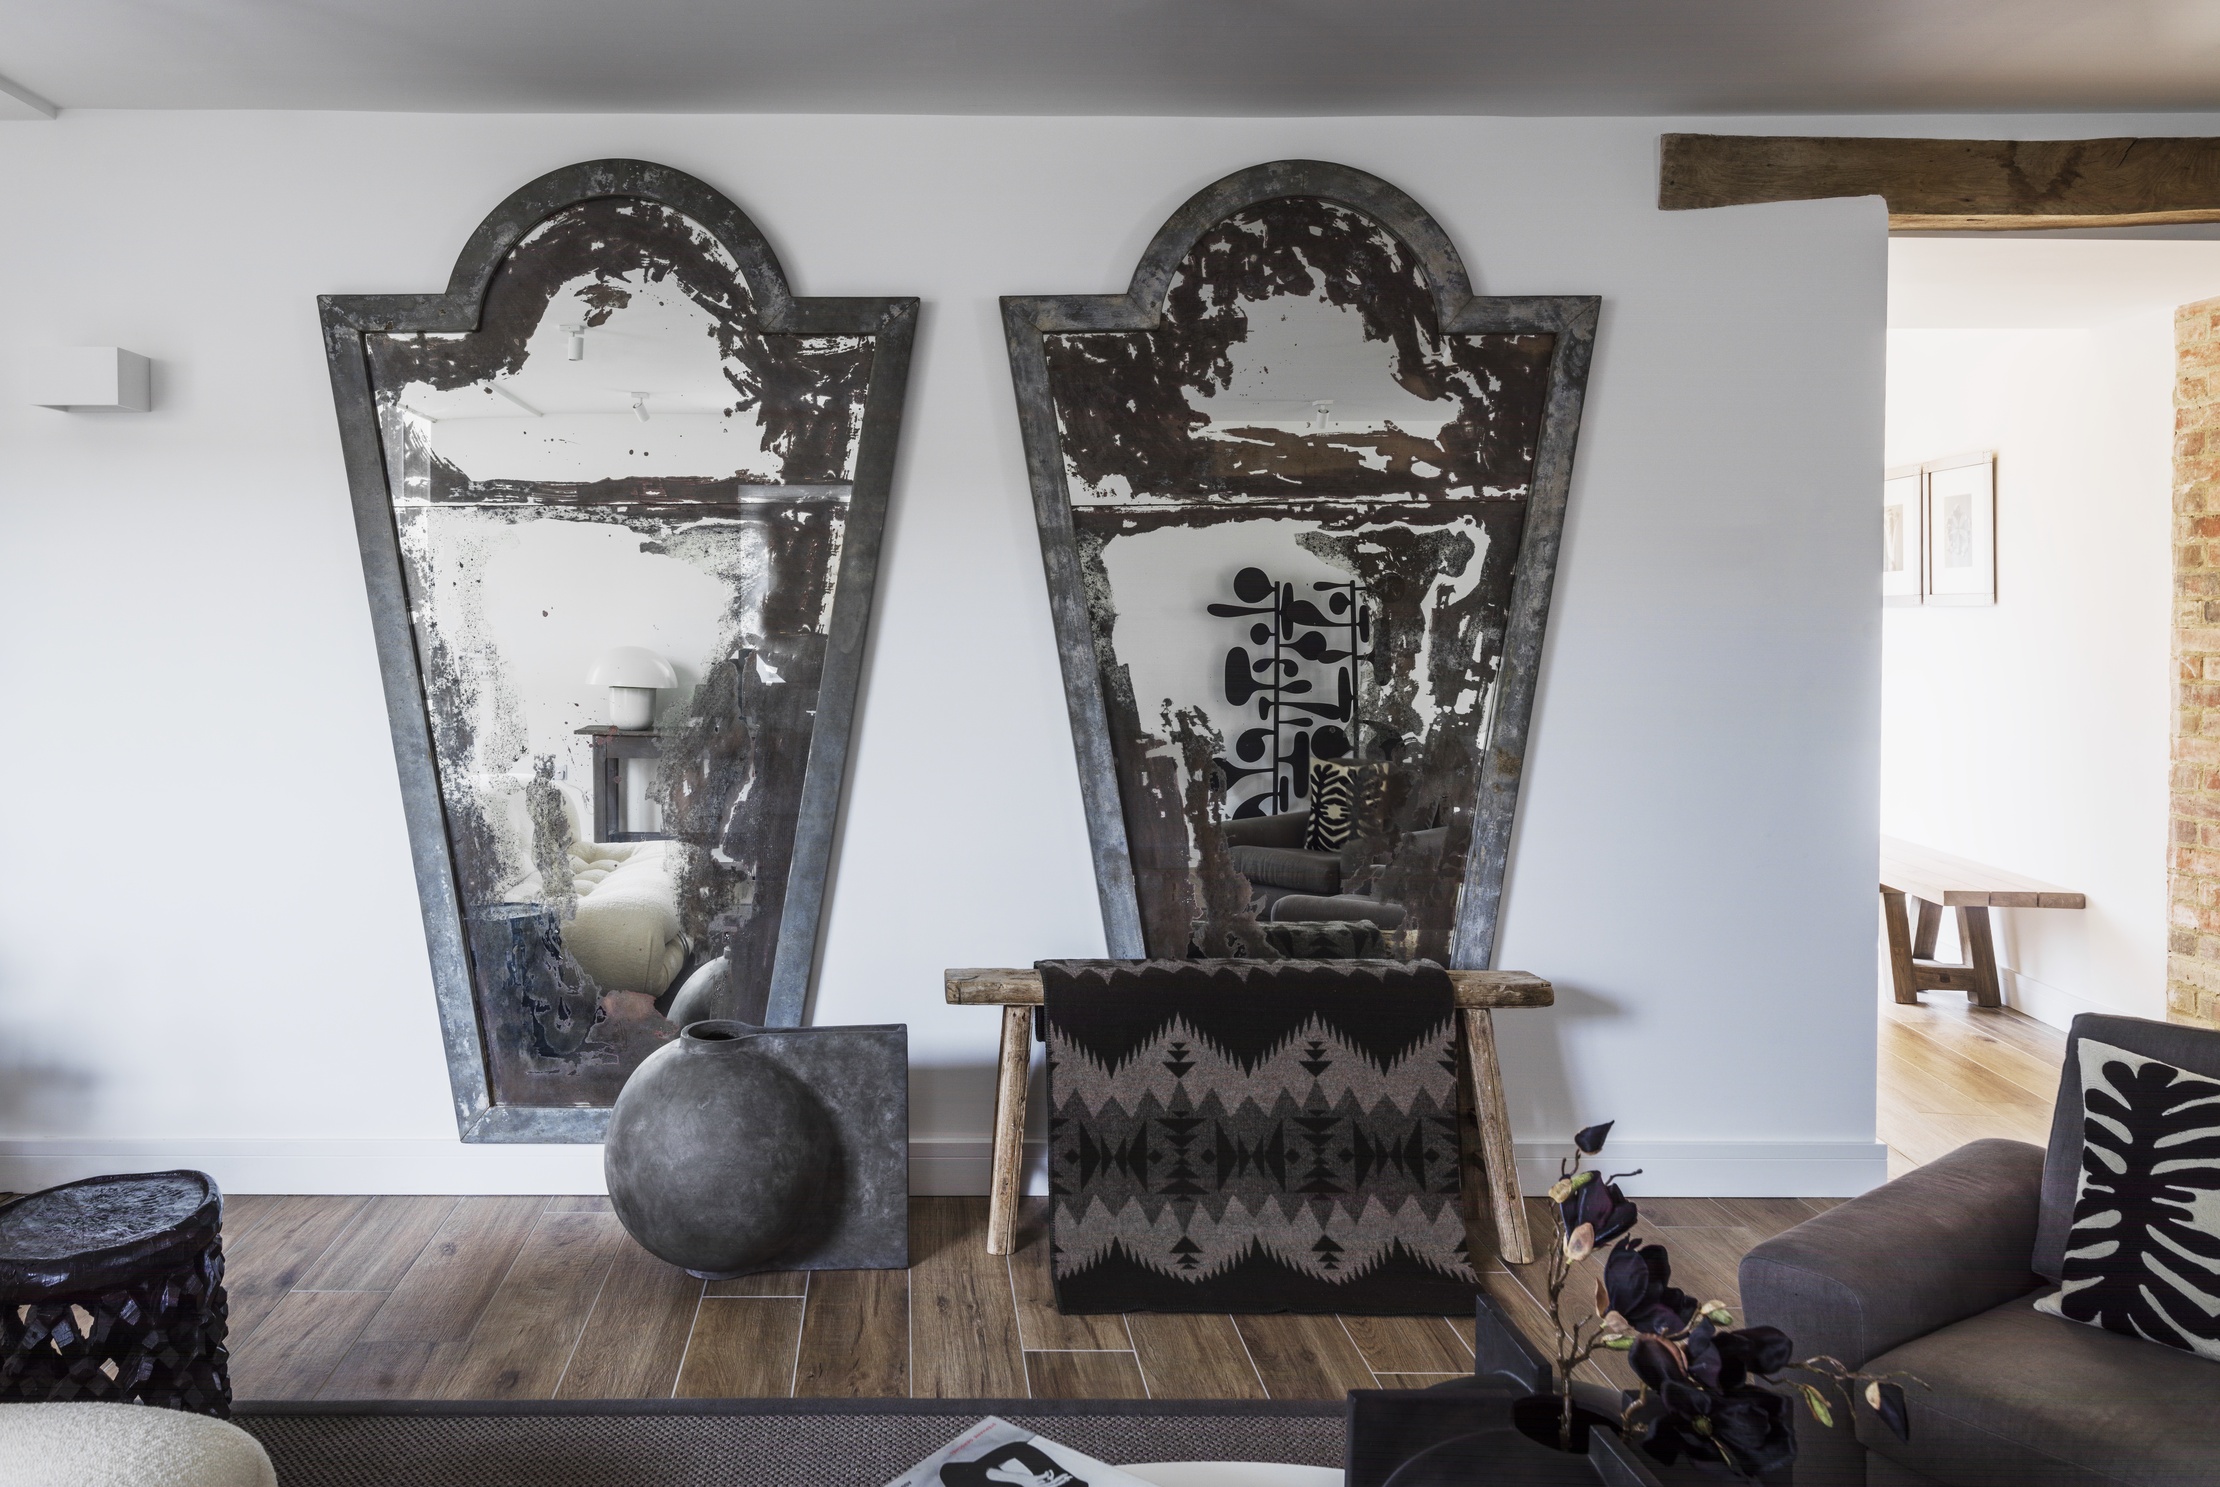 珍藏多年的仿古锈蚀威尼斯镜，在白墙烘托下格 外显眼，别具一番风味。